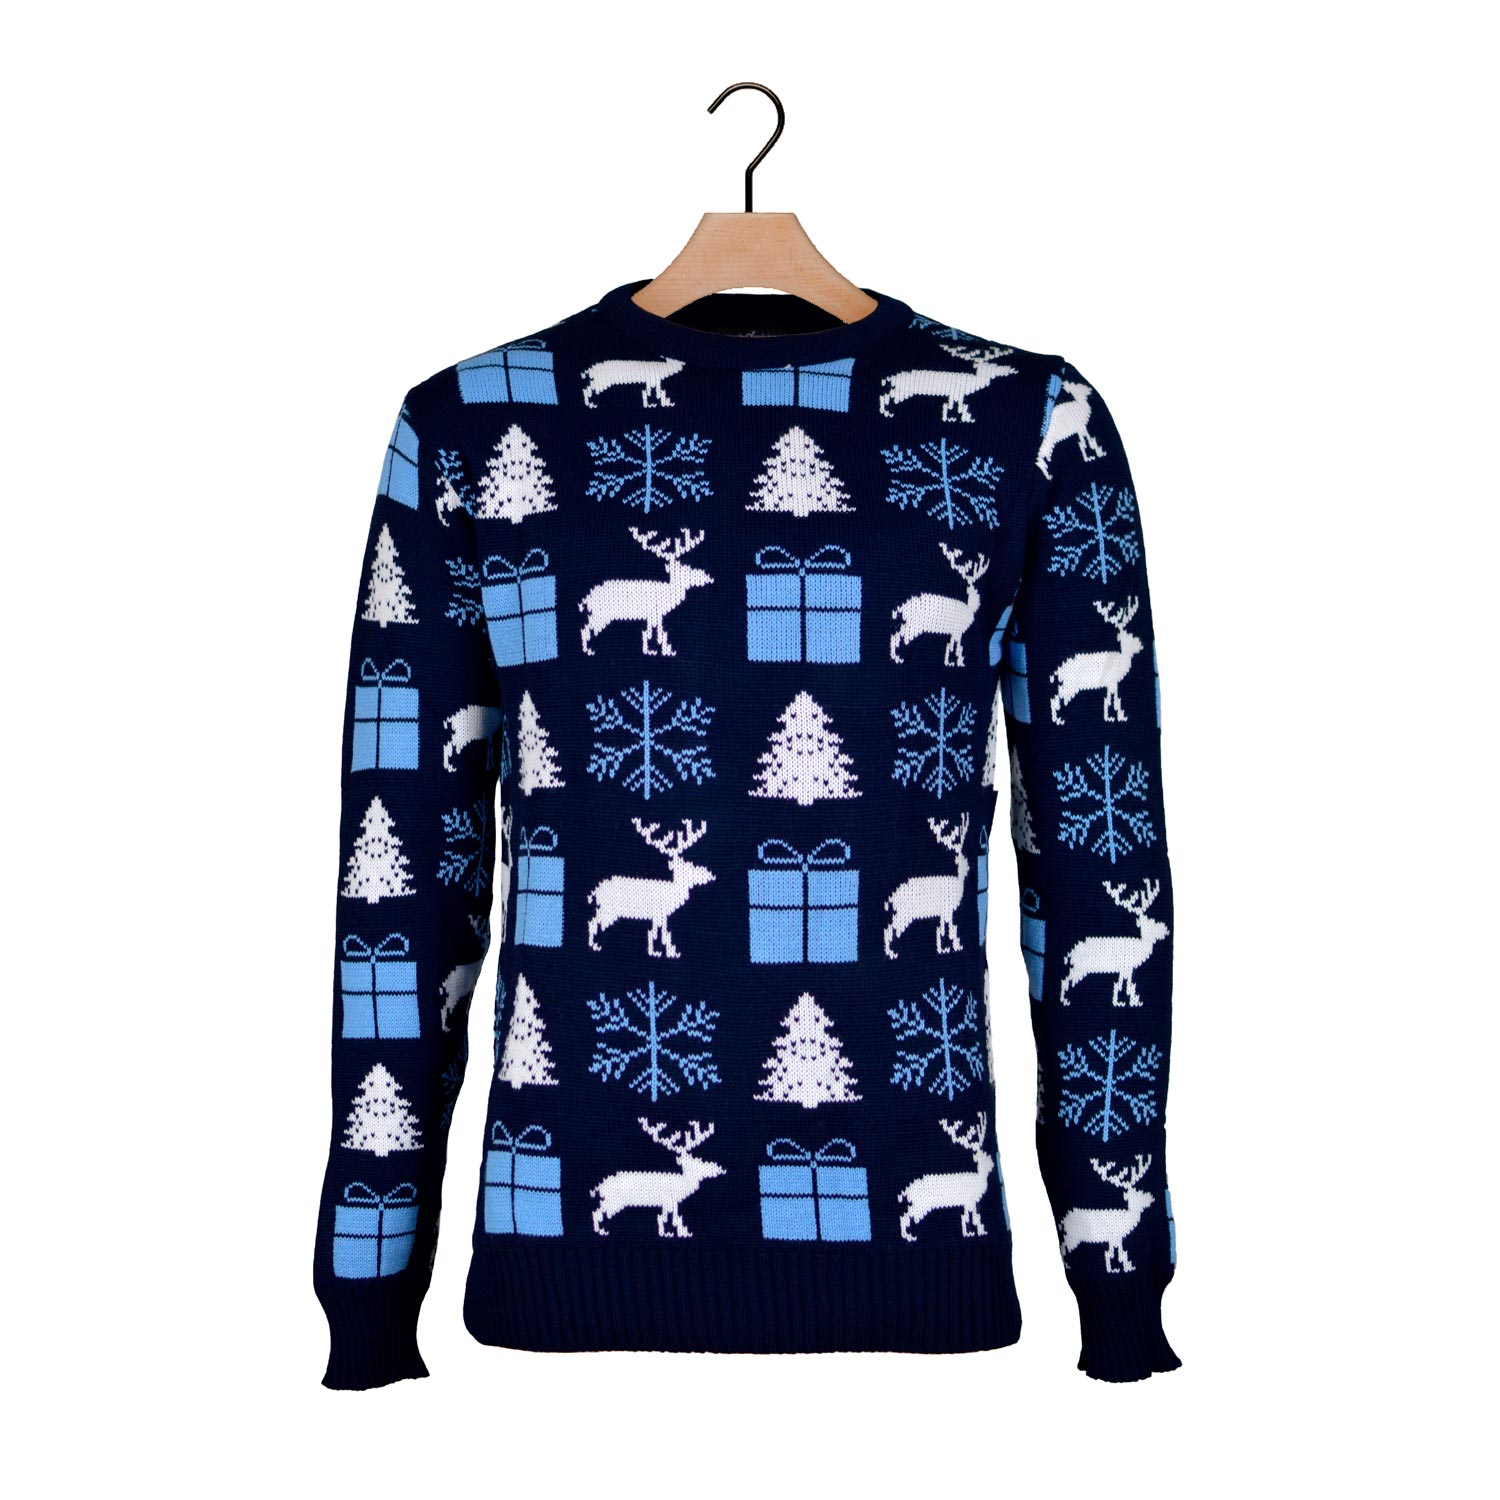 Niebieski Sweter Świąteczny z Reniferami, Prezentami i Choinkami